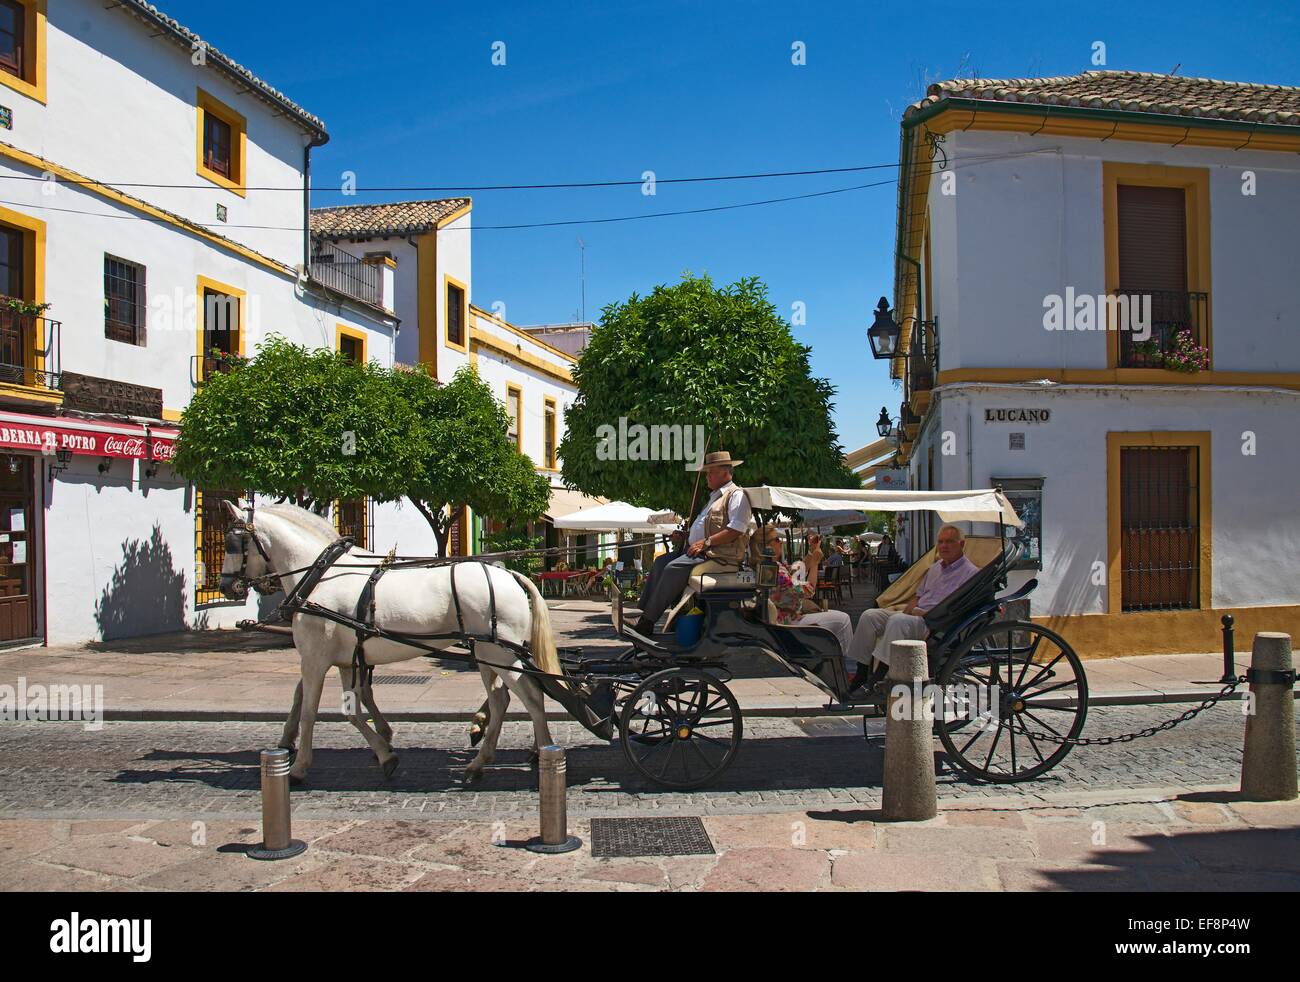 Transporte en la ciudad vieja, provincia de Córdoba, Andalucía, España Foto de stock